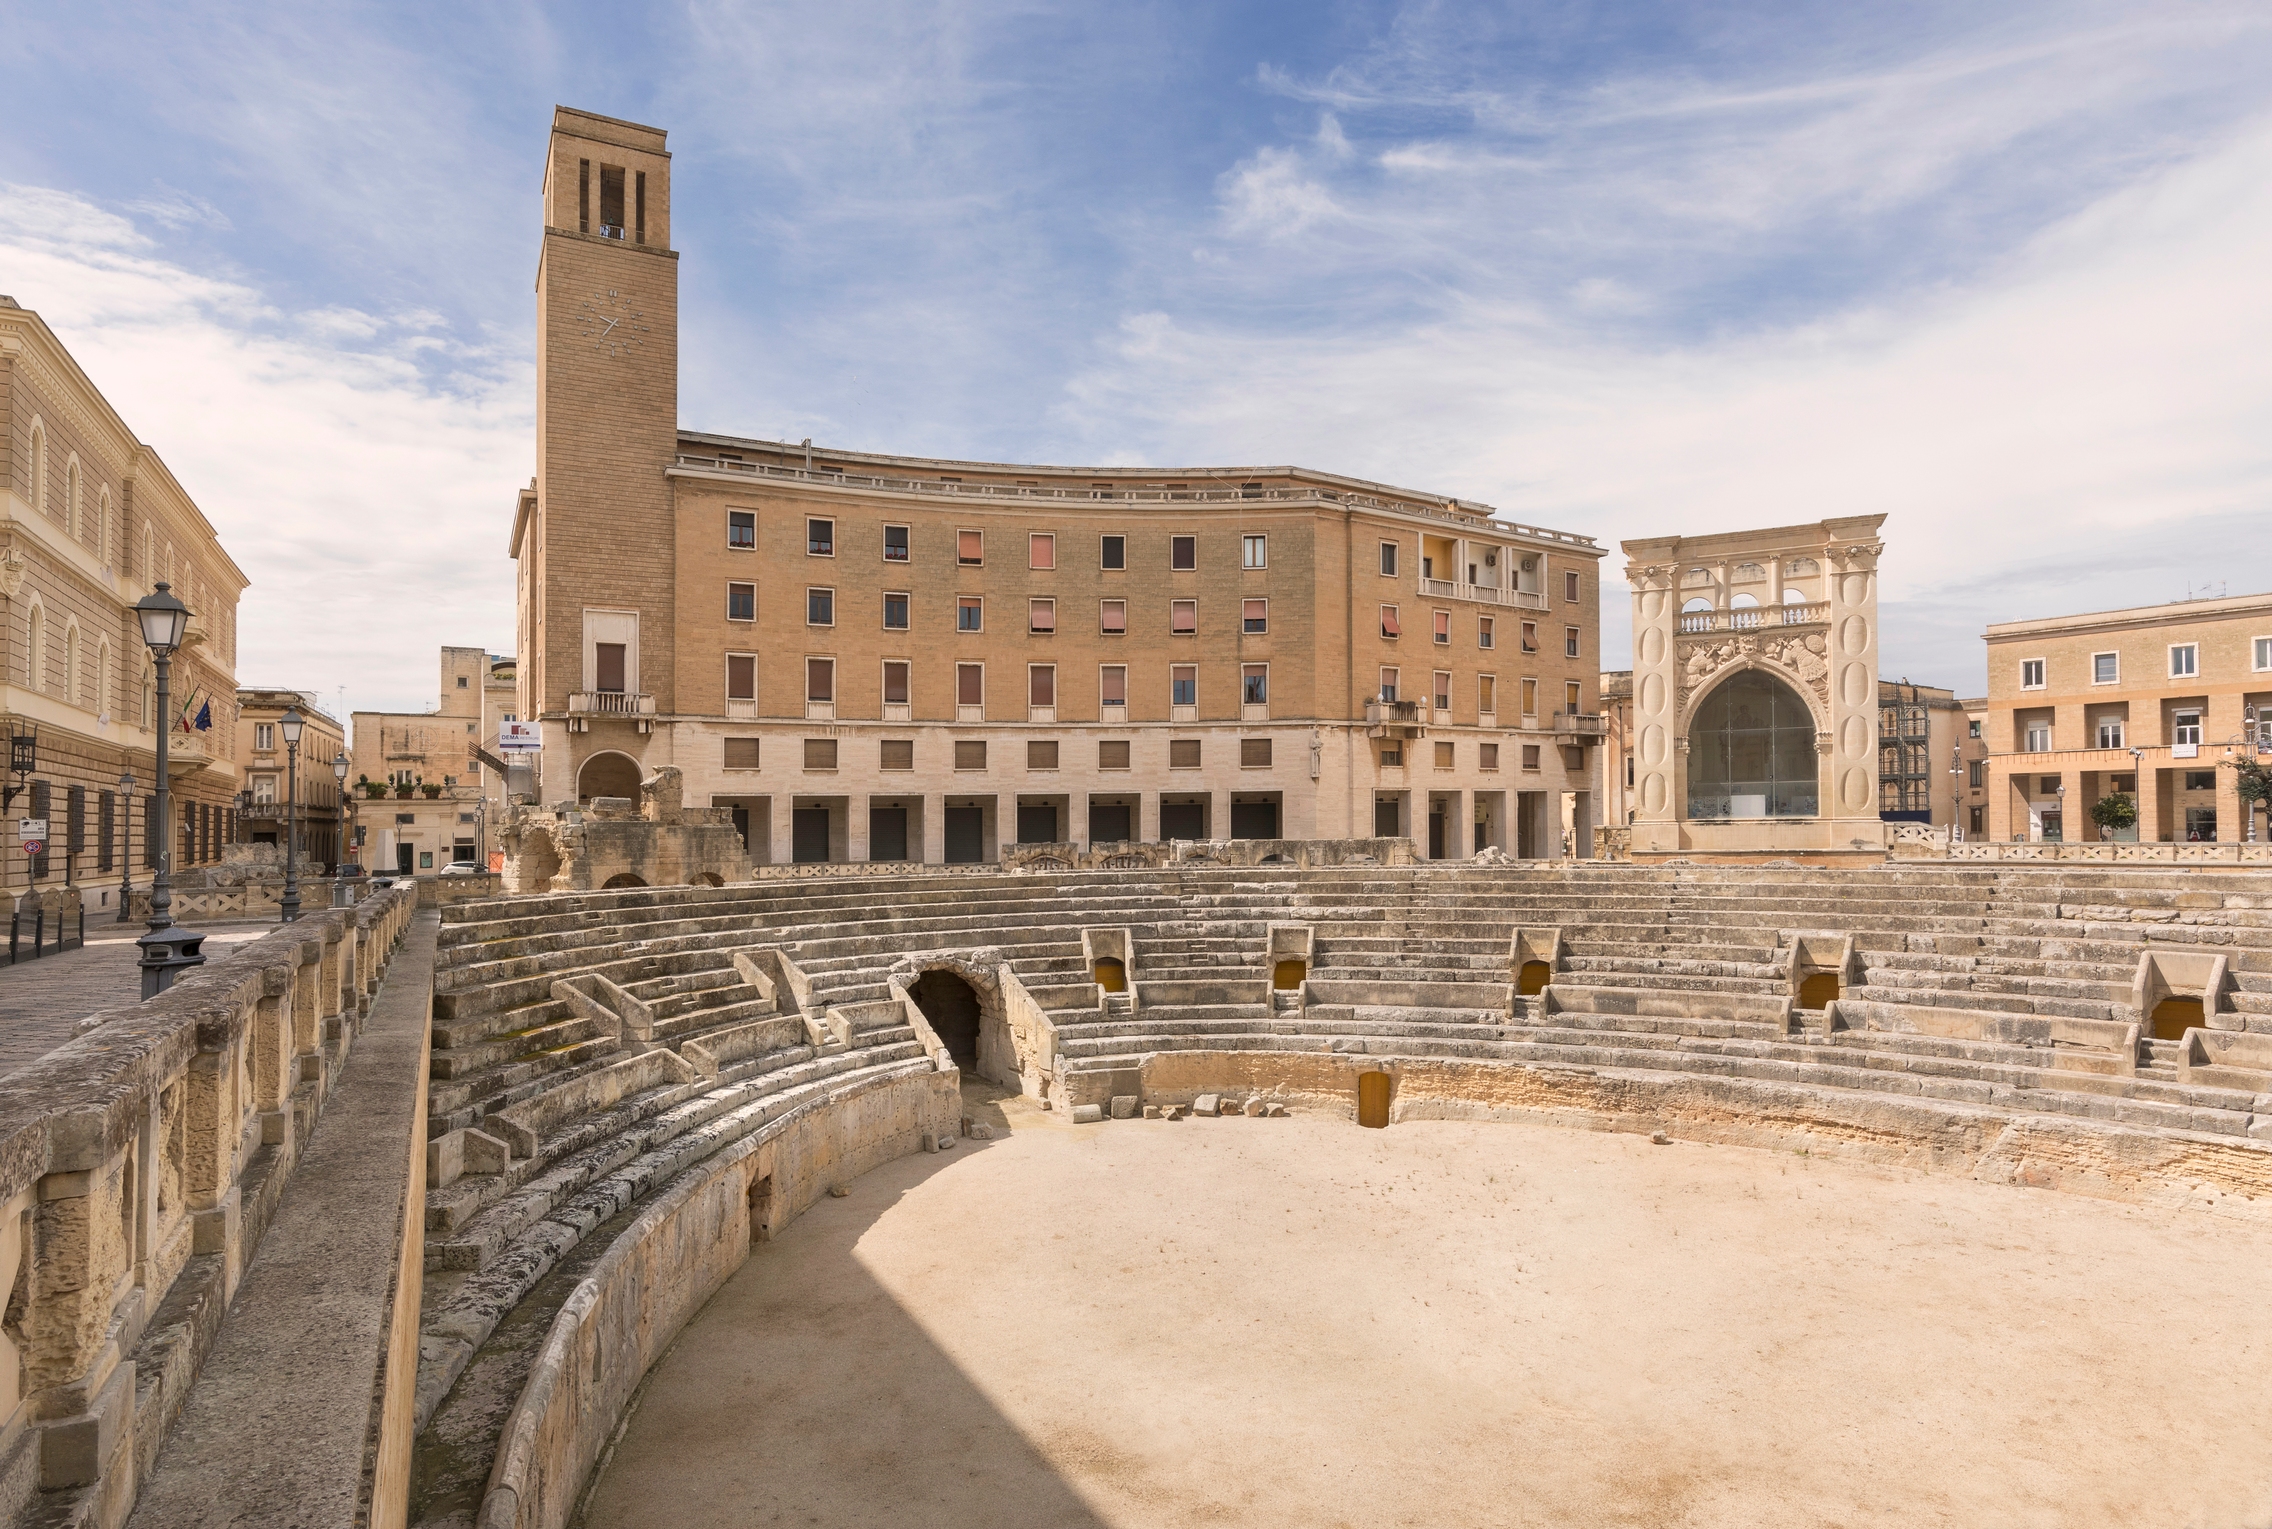 Anfiteatro romano in Piazza Sant'Oronzo, Lecce